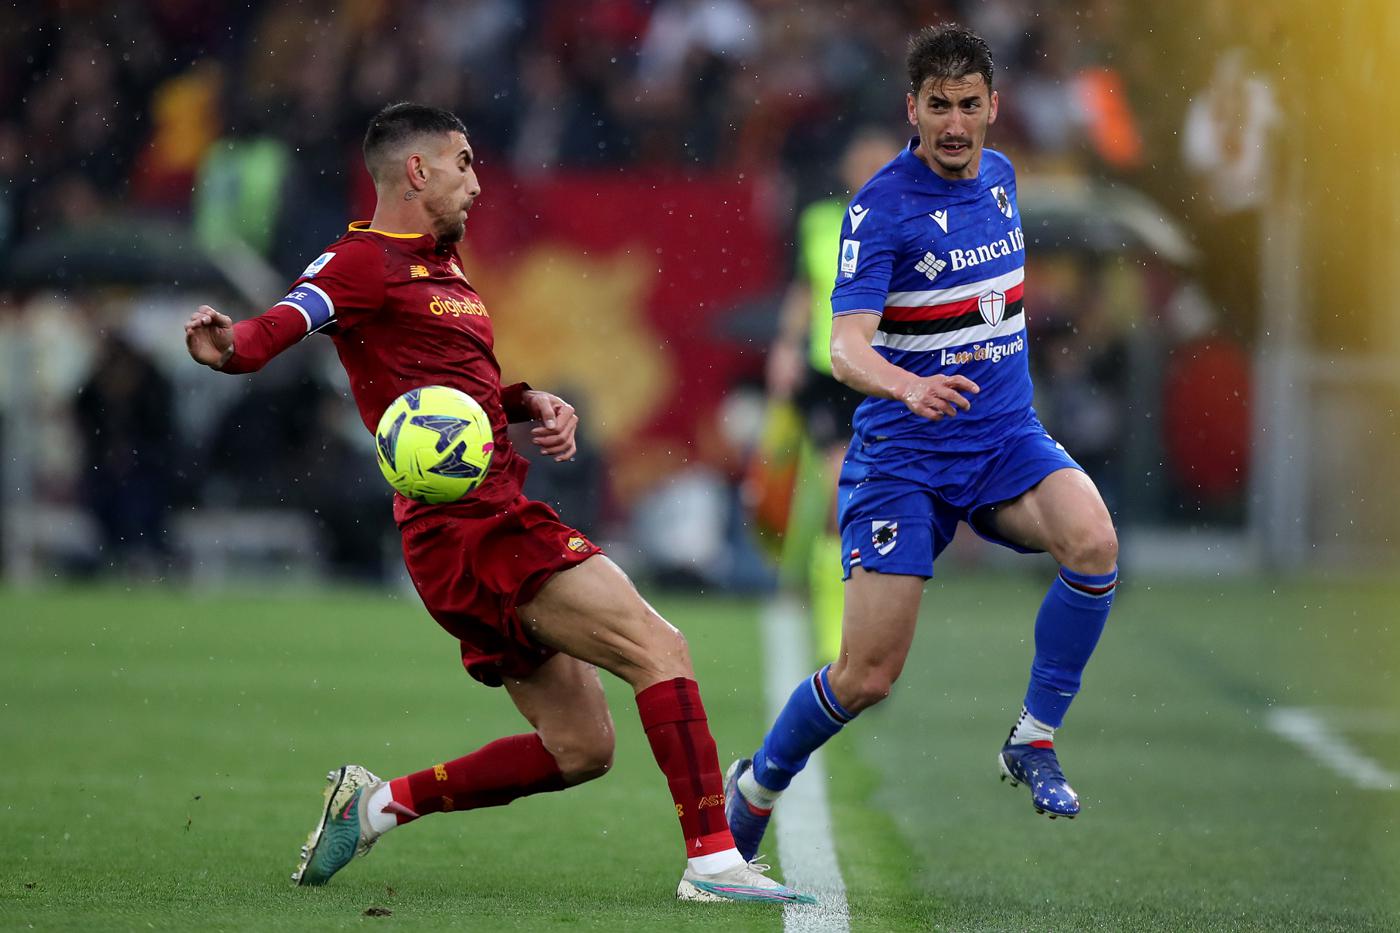 Roma - Sampdoria - 3:0. Mistrzostwa Włoch, 28. runda. Przegląd meczu, statystyki